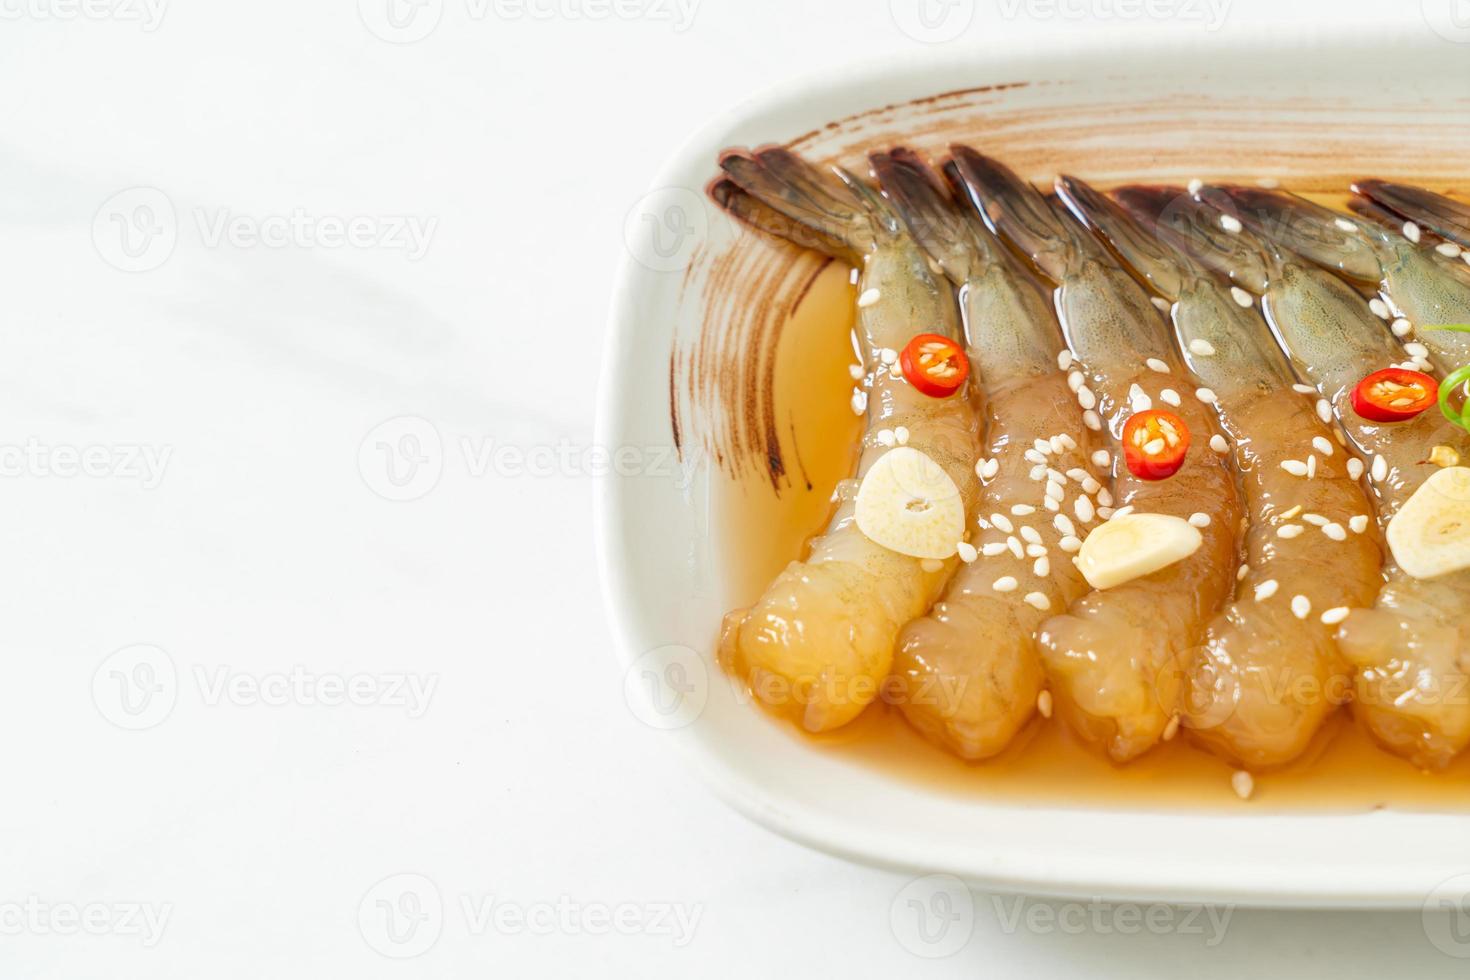 langostinos en escabeche al estilo coreano o camarones en escabeche con salsa de soja coreana foto